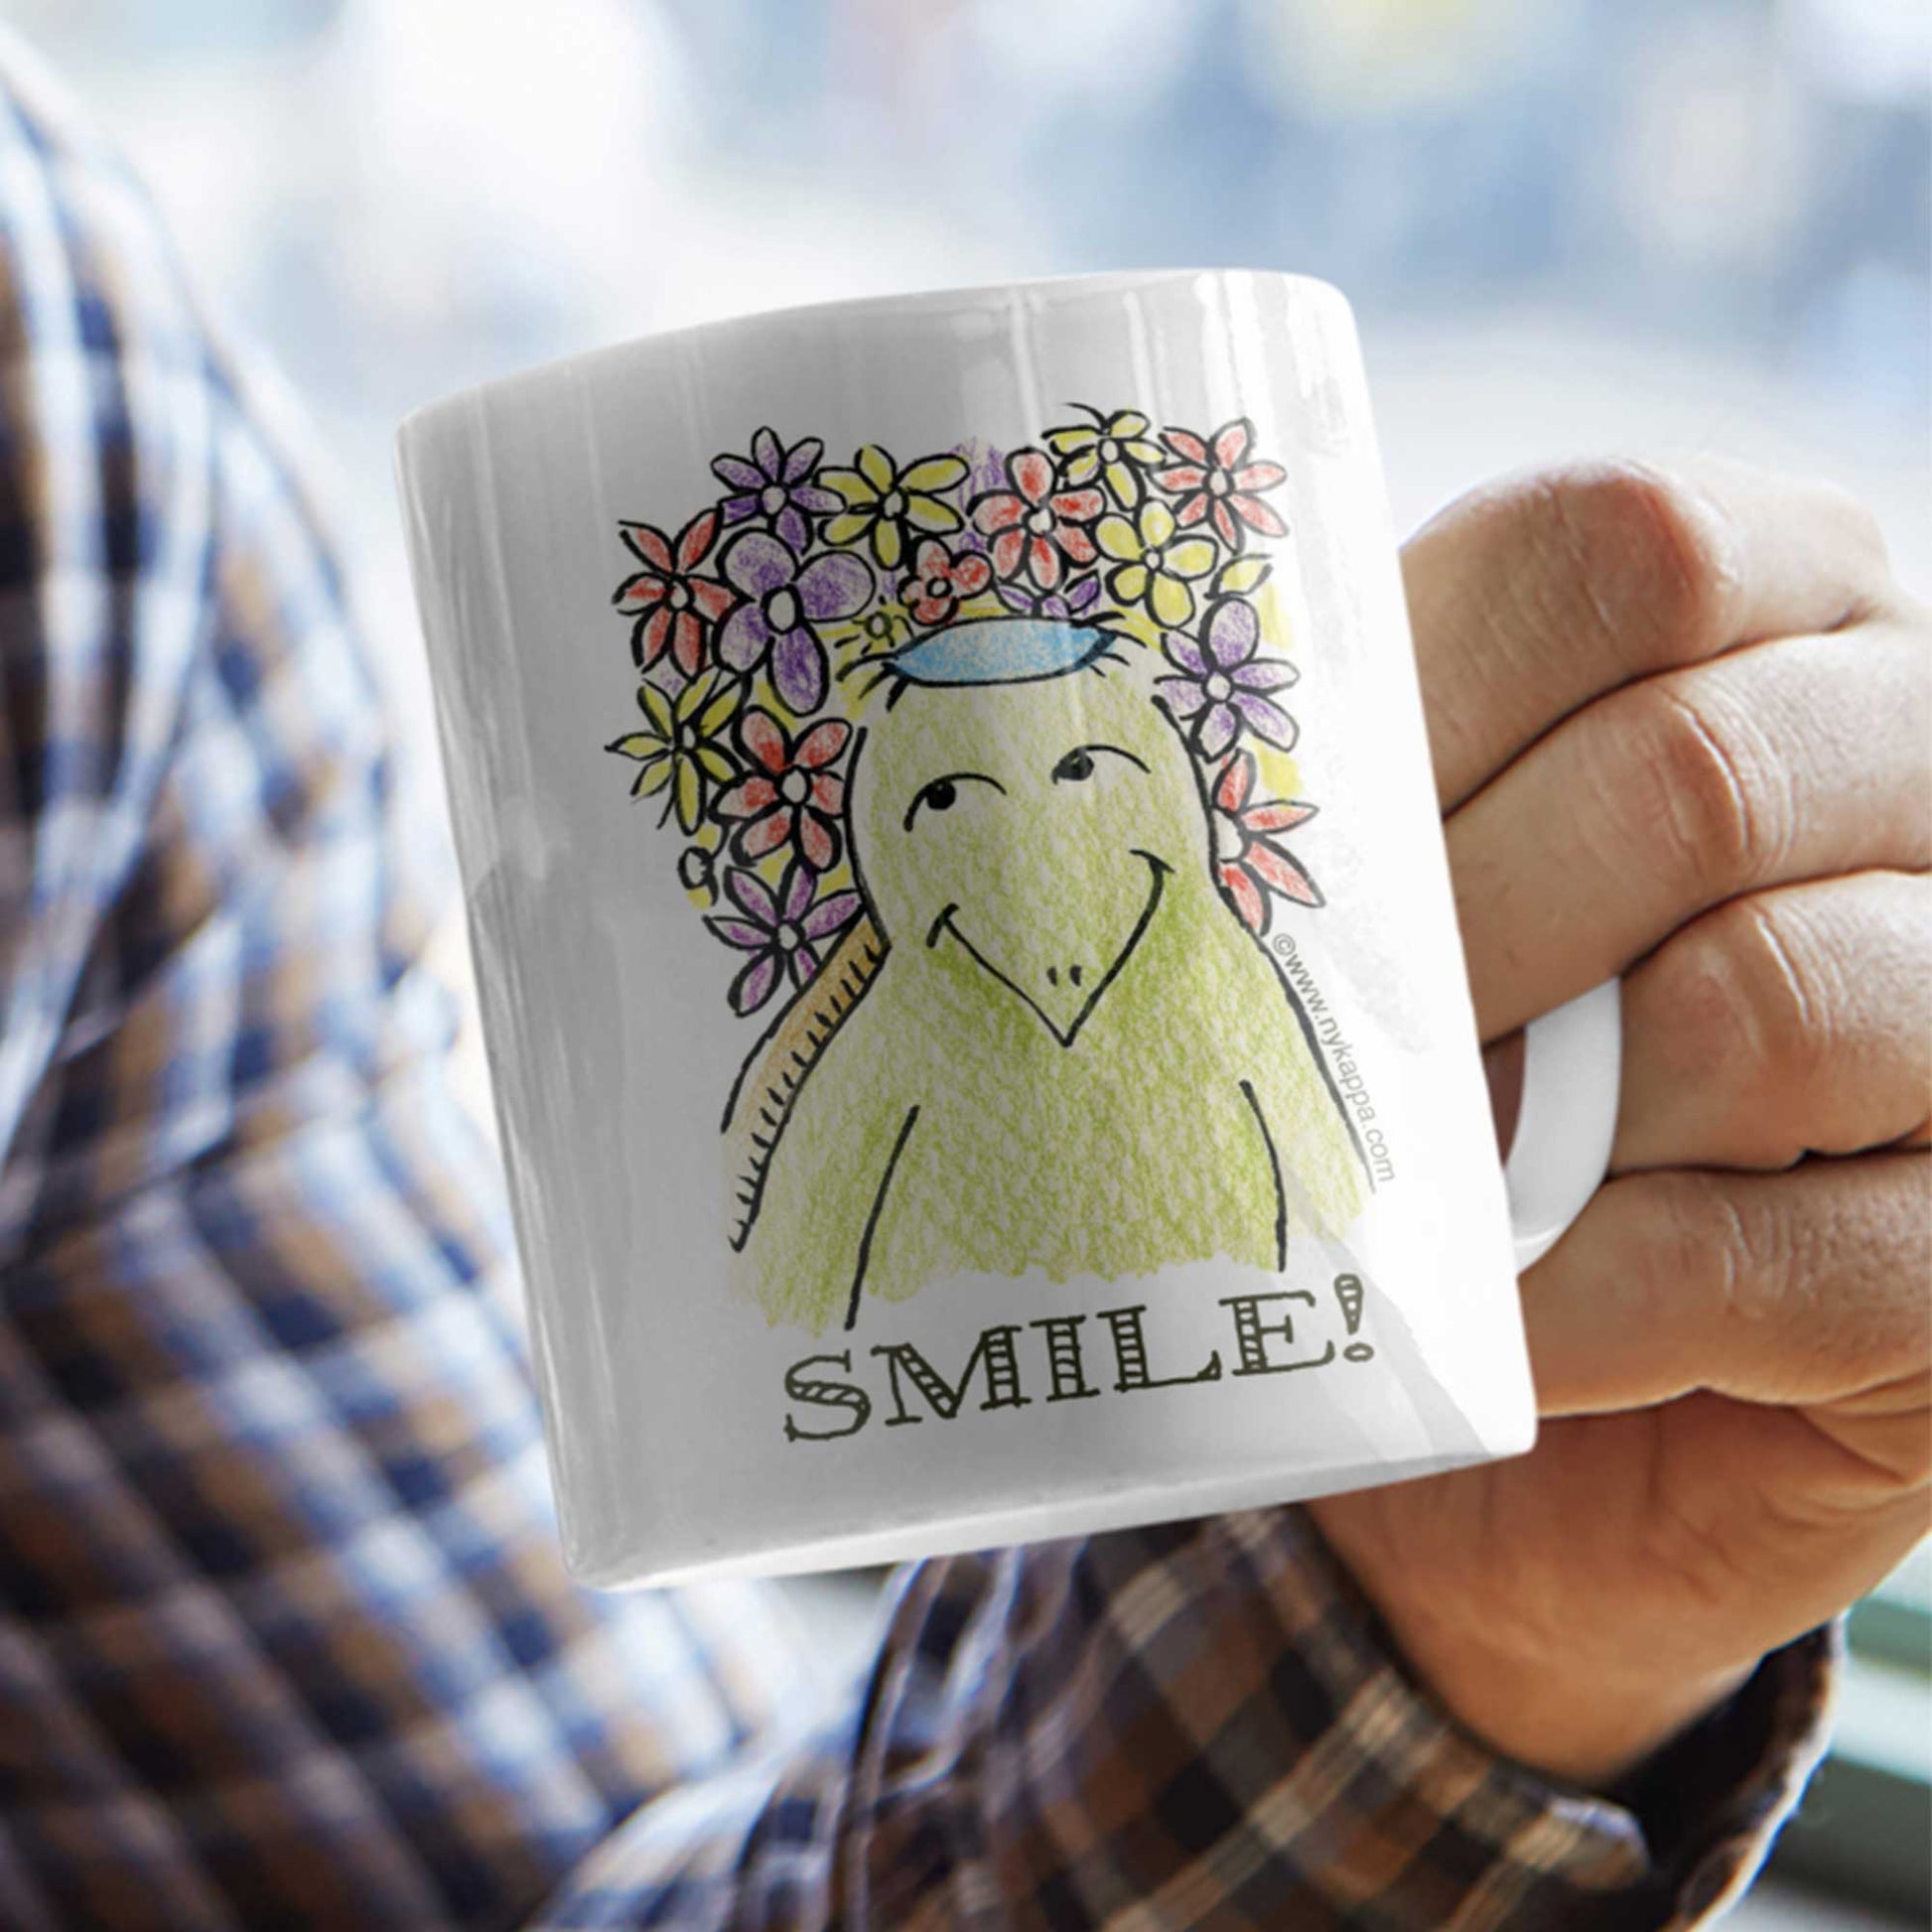 かわいいな NYのカッパ "SMILE!" NYの河童 かっぱ コーヒー マグカップ NY Kappa Smile Coffee Mug Cup2